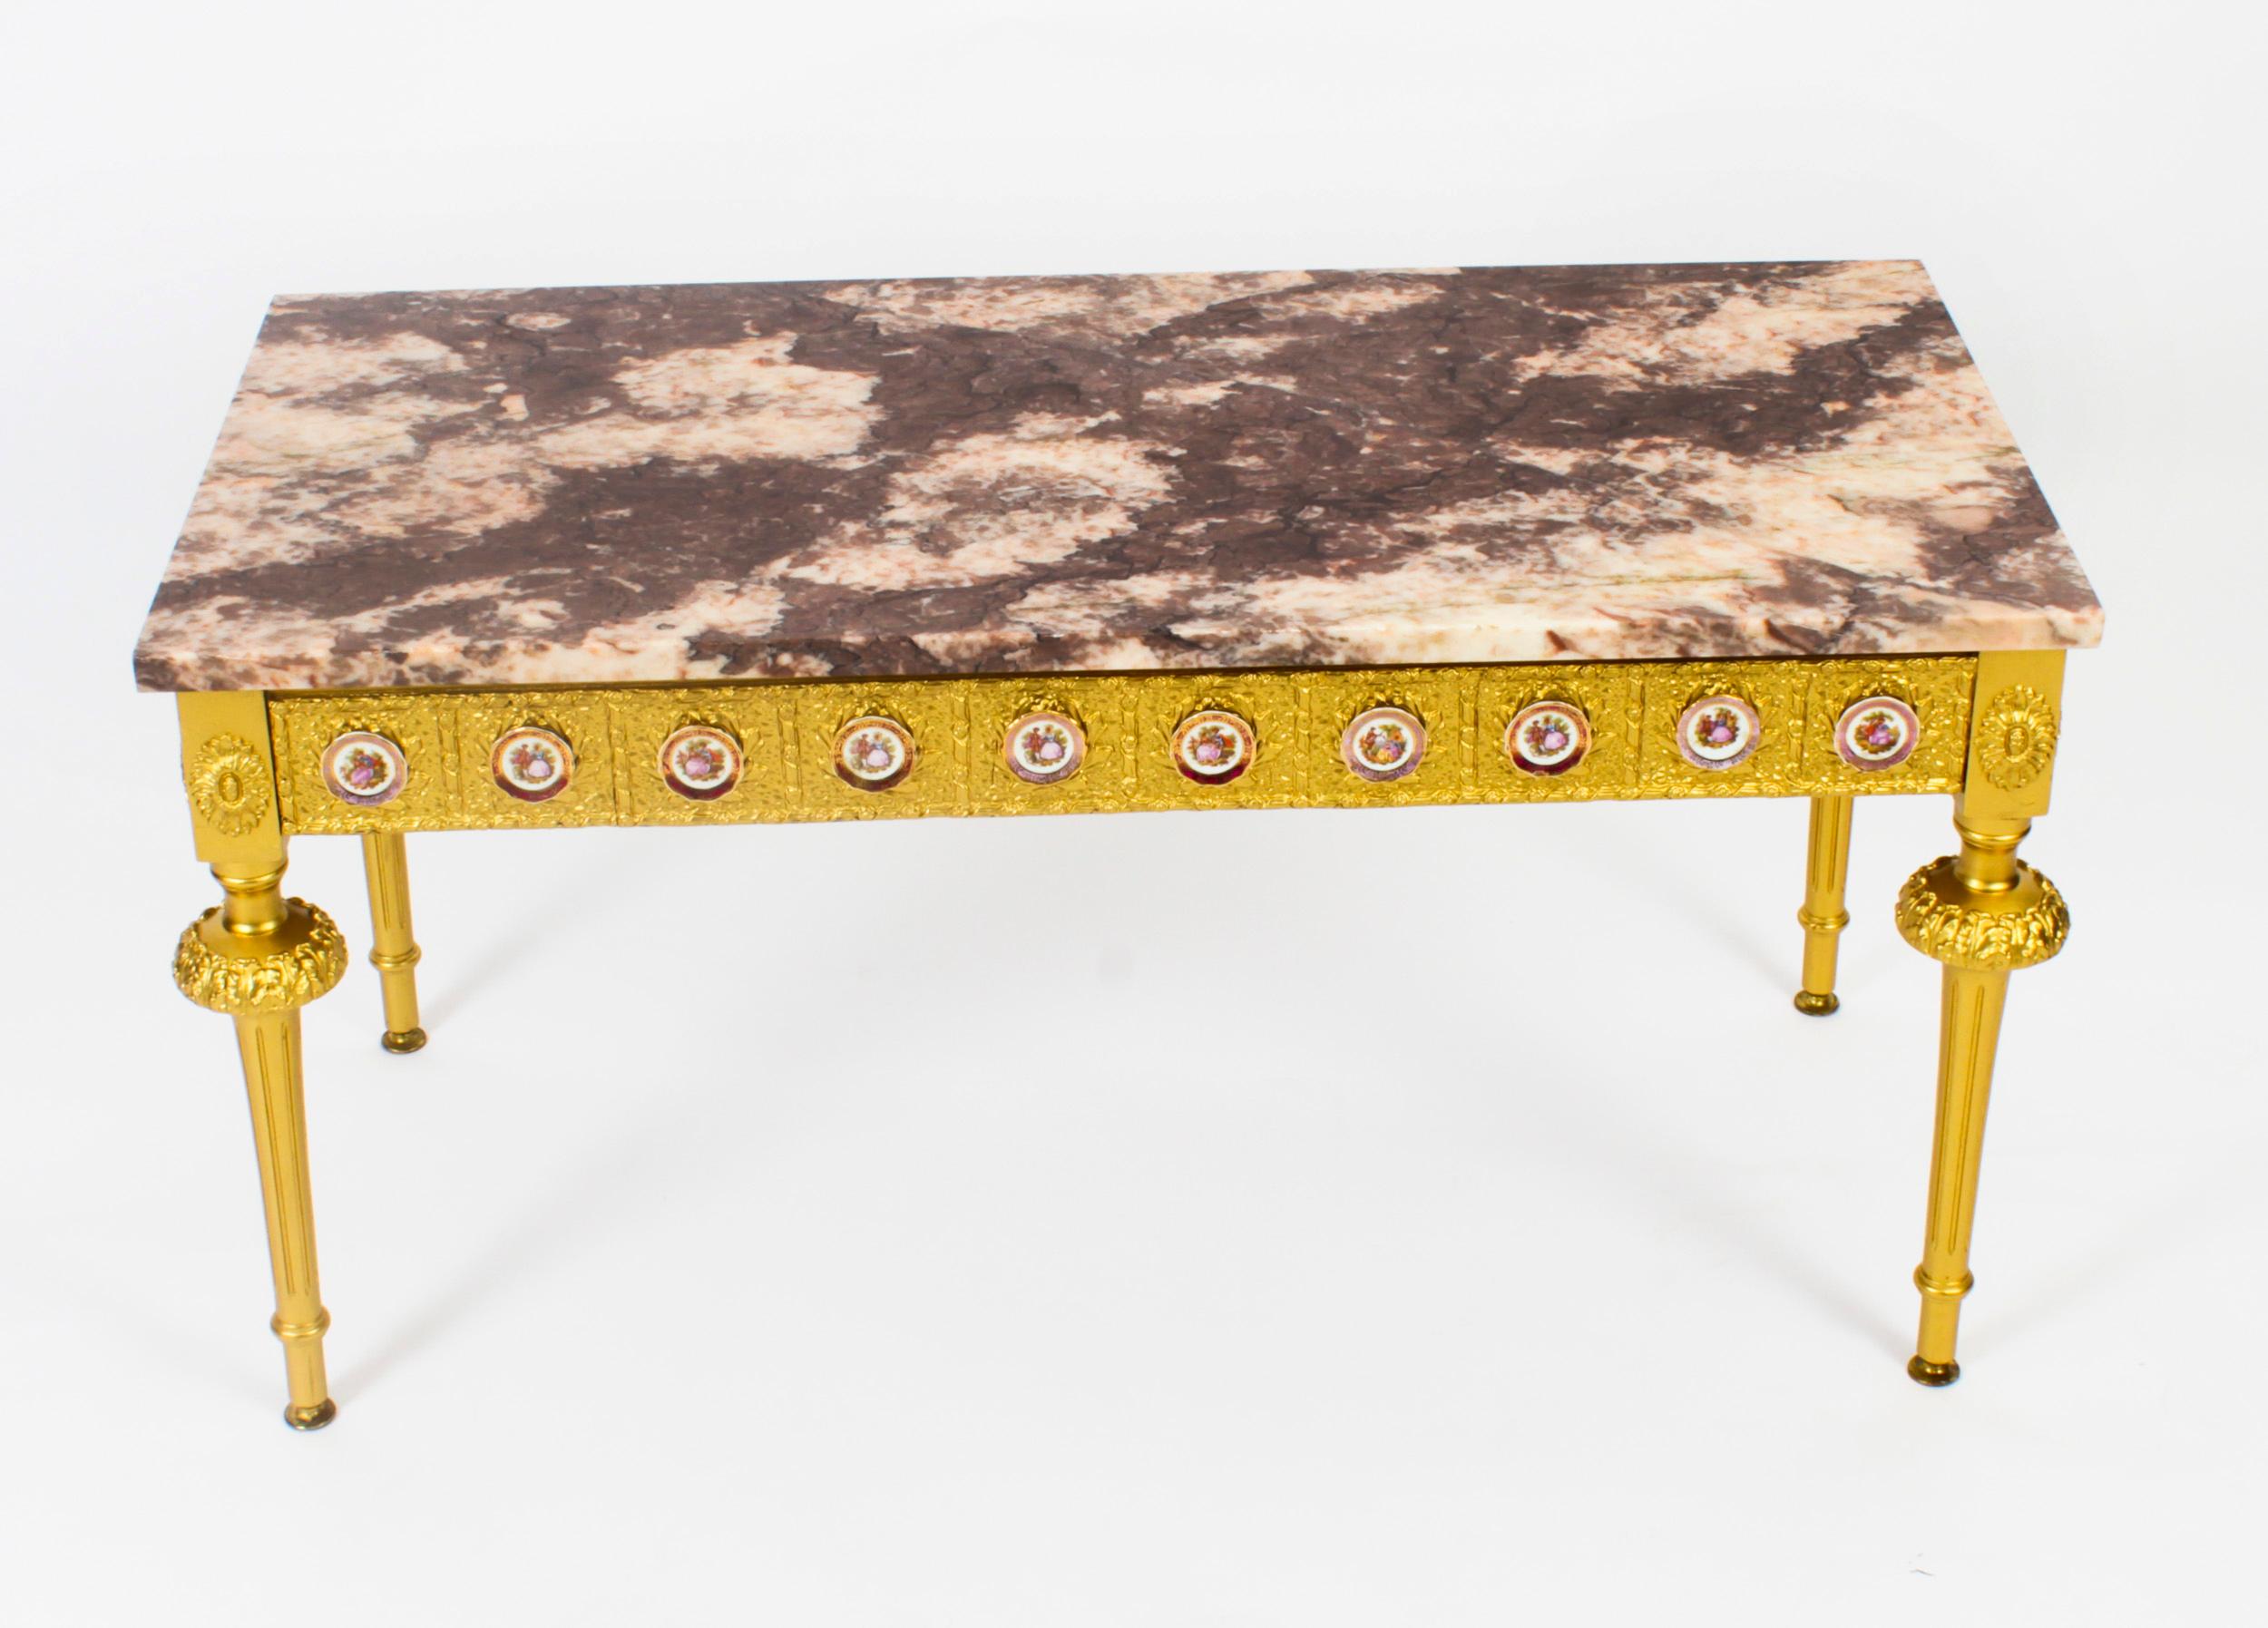 Il s'agit d'une exquise table basse française en bois doré et marbre avec des plaques de Limoges, datant d'environ 1950.

Cette merveilleuse table basse est de forme rectangulaire et possède quatre pieds cannelés effilés élégants et stylés. La